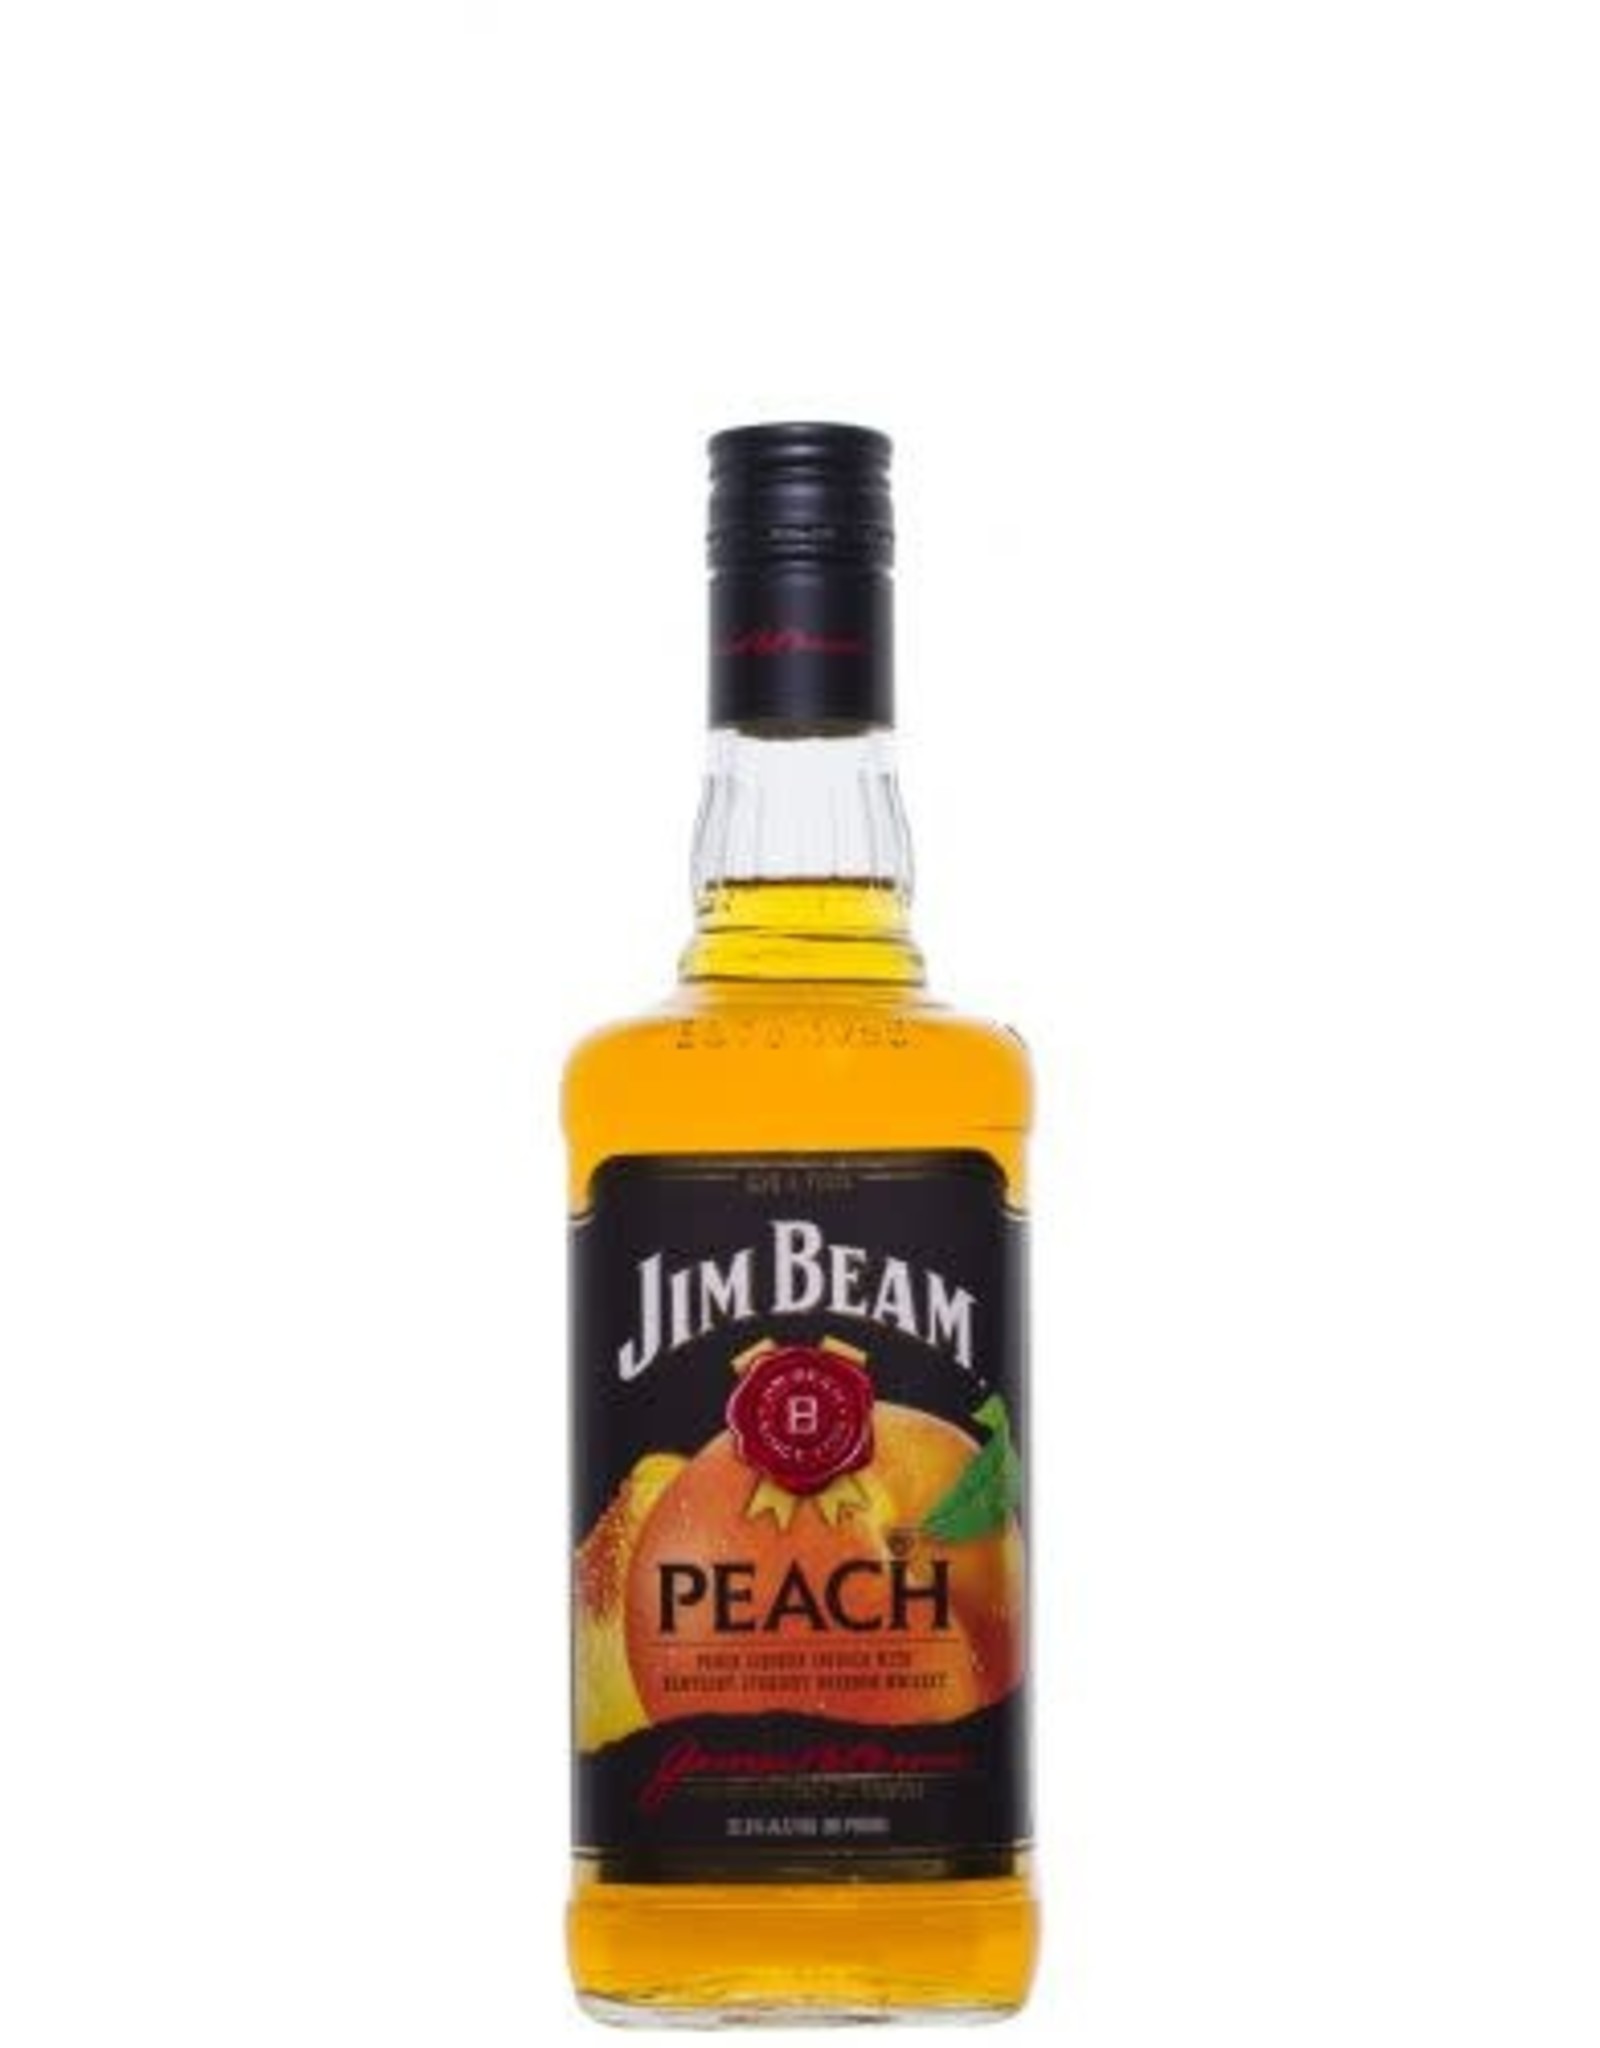 Jim Beam JIM BEAM - PEACH WHISKEY - 65 PR - 750 ML